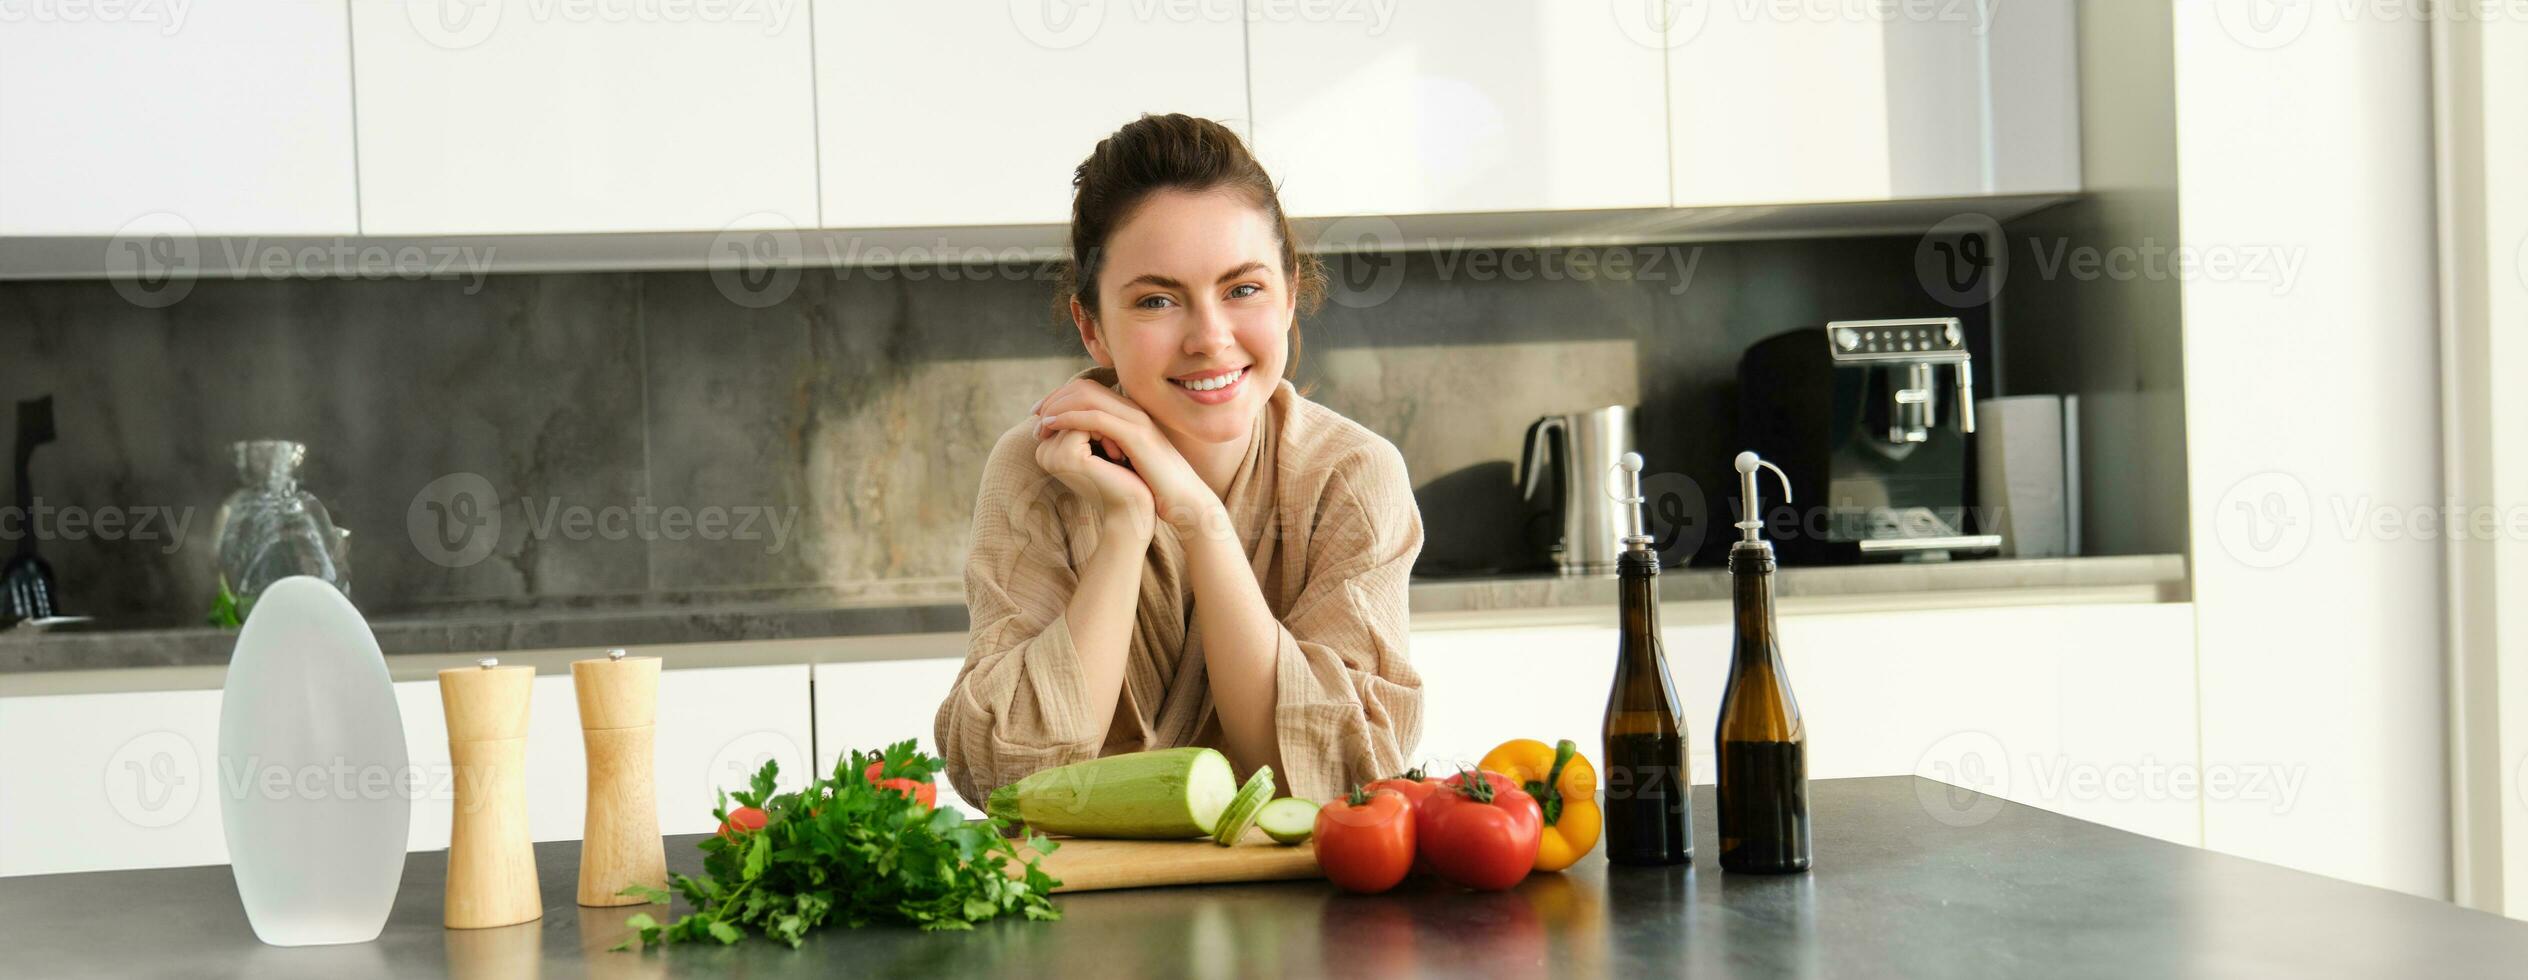 retrato do sorridente jovem mulher cozinhando dentro cozinha dentro acolhedor roupas, em pé perto contador com cortar quadro, vegetais, abobrinha, preparando jantar para família, fazer salada foto